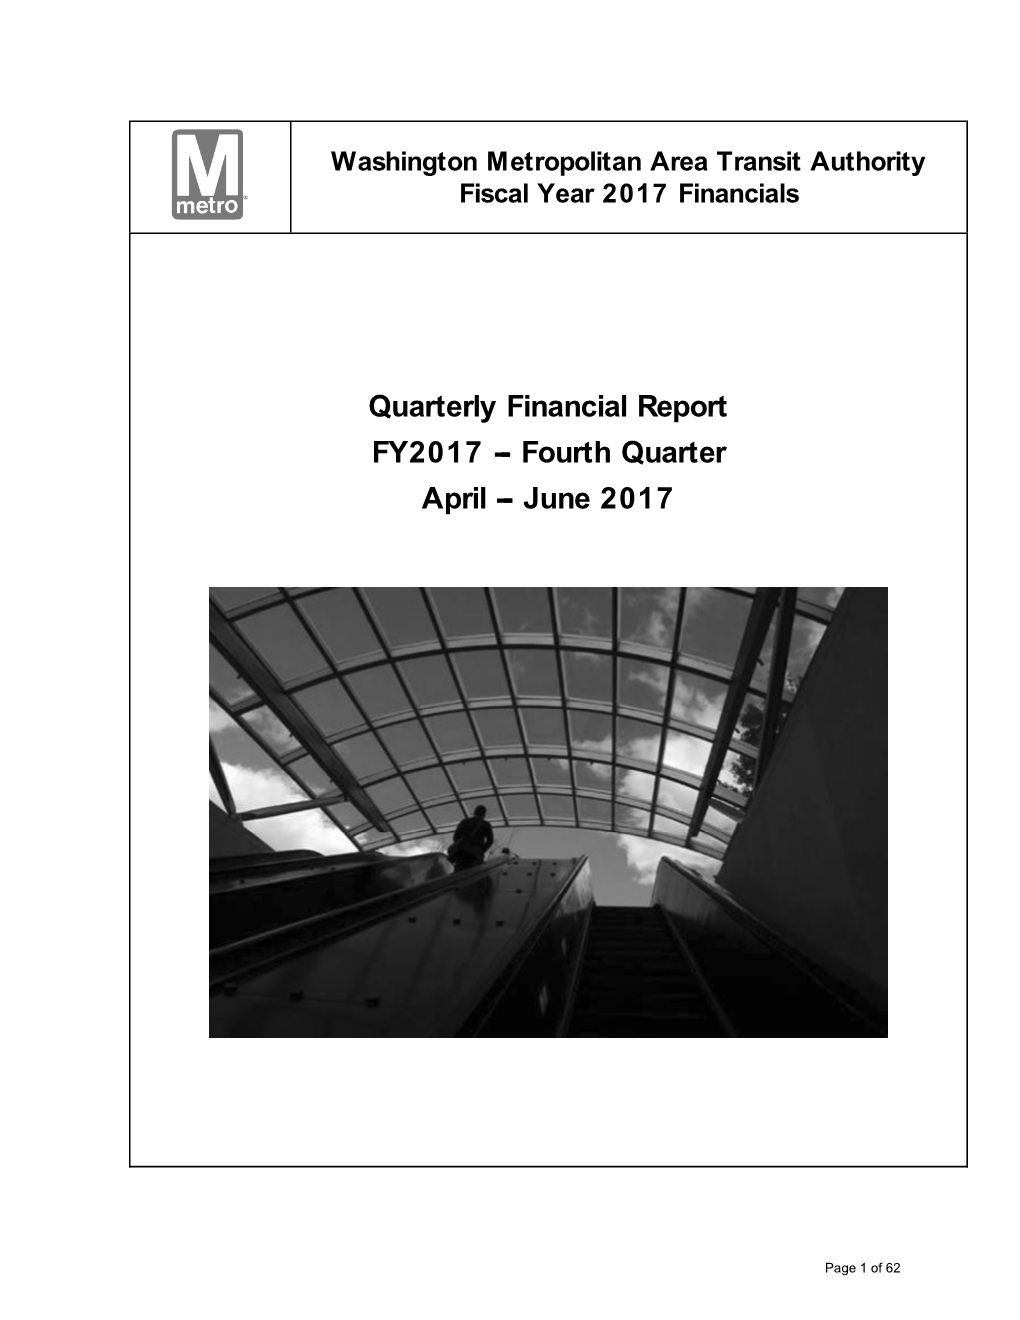 Quarterly Financial Report FY2017 -- Fourth Quarter April -- June 2017